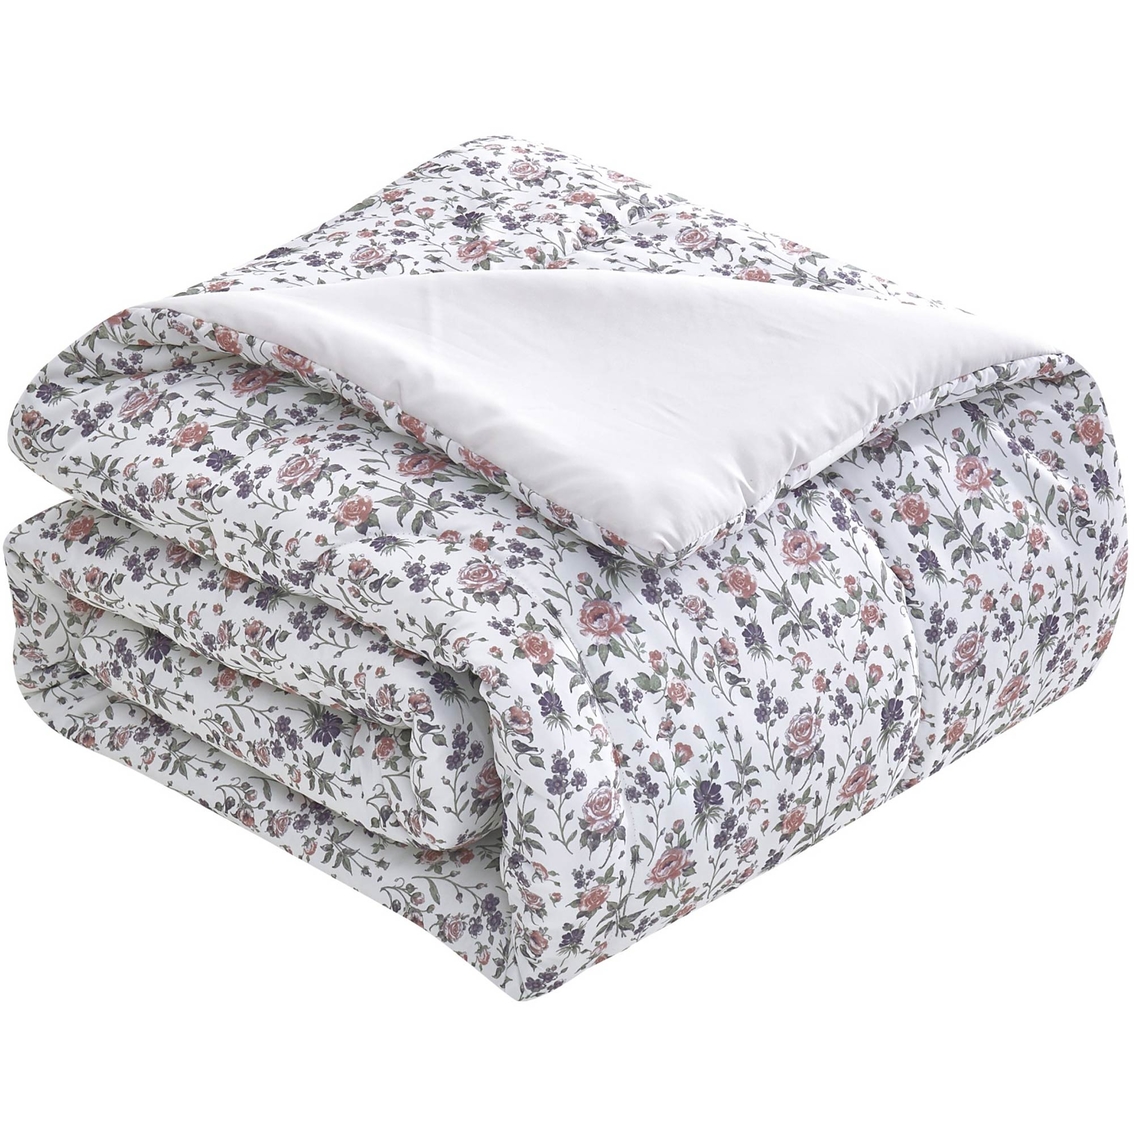 Brown & Grey Michelle Rose 6-Piece Comforter Set, Queen - Image 5 of 6